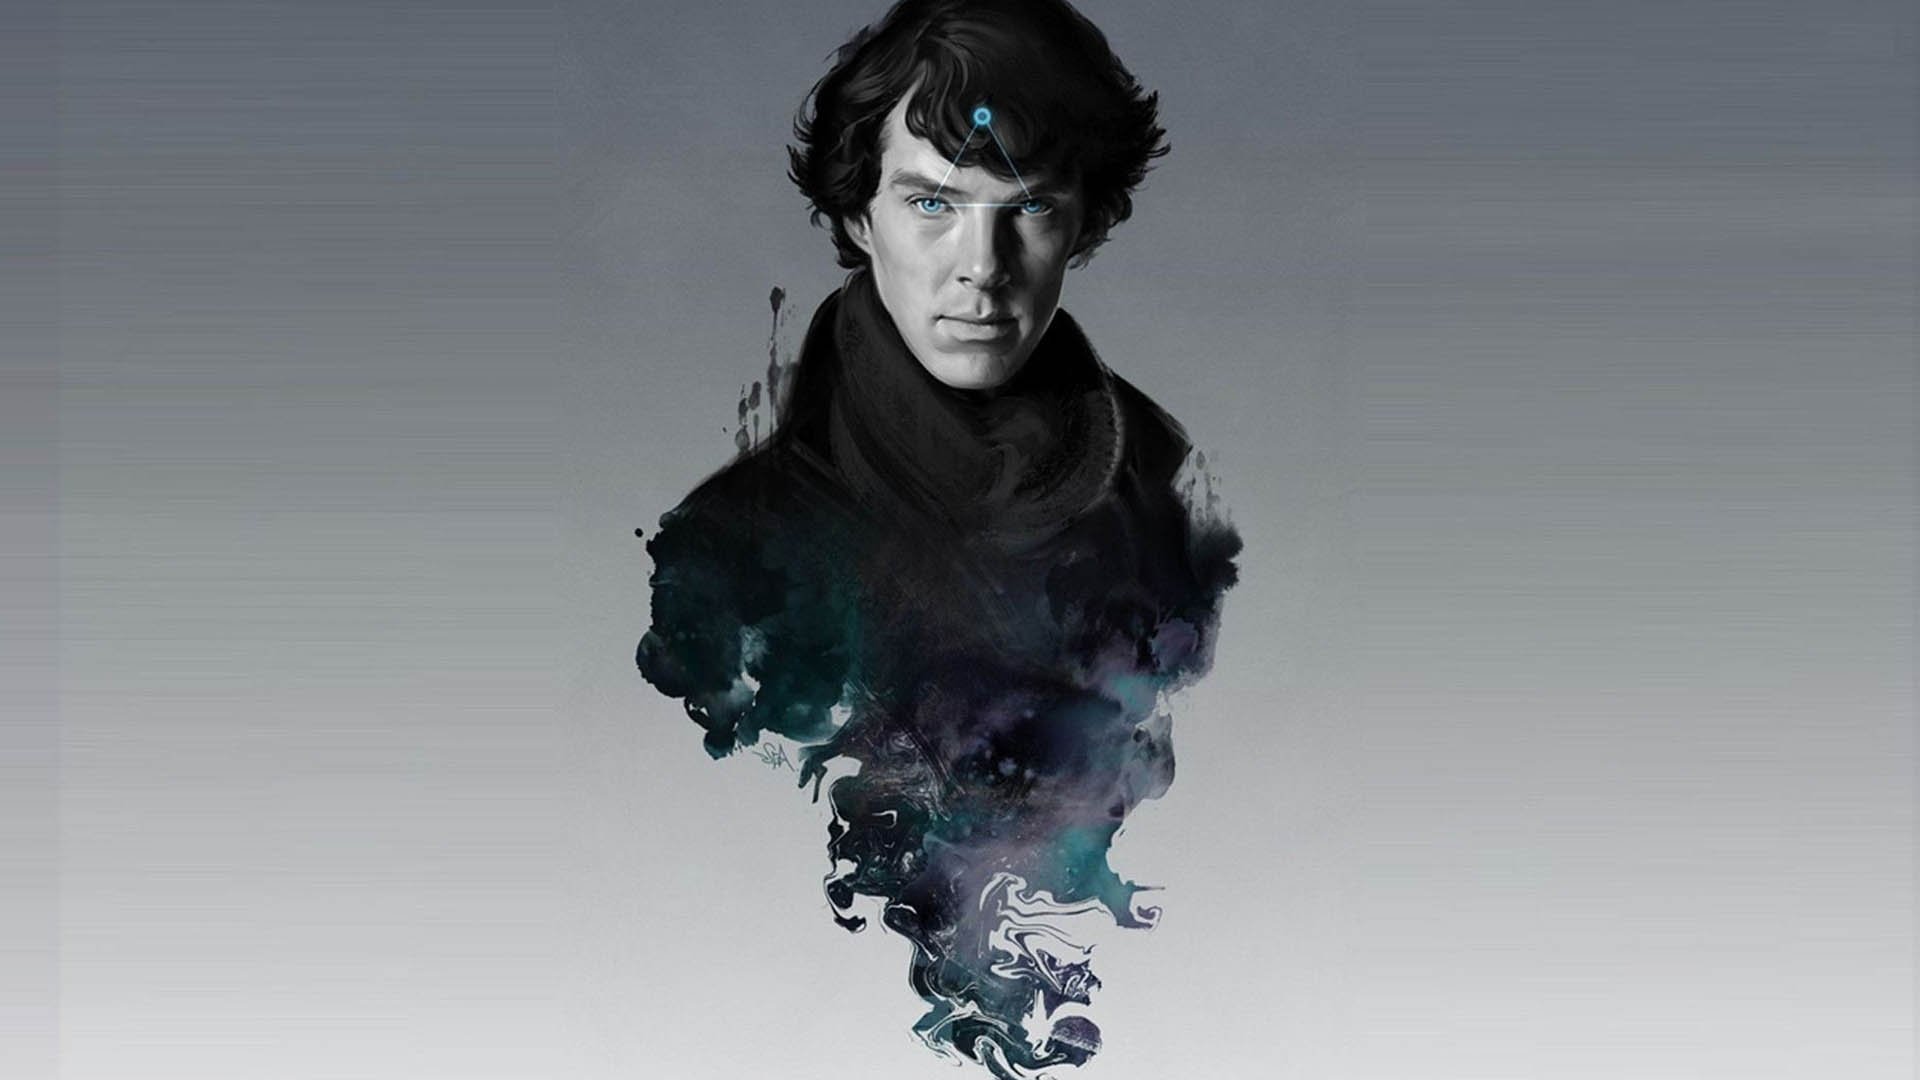 Fan art of Sherlock Holmes character in Sherlock series